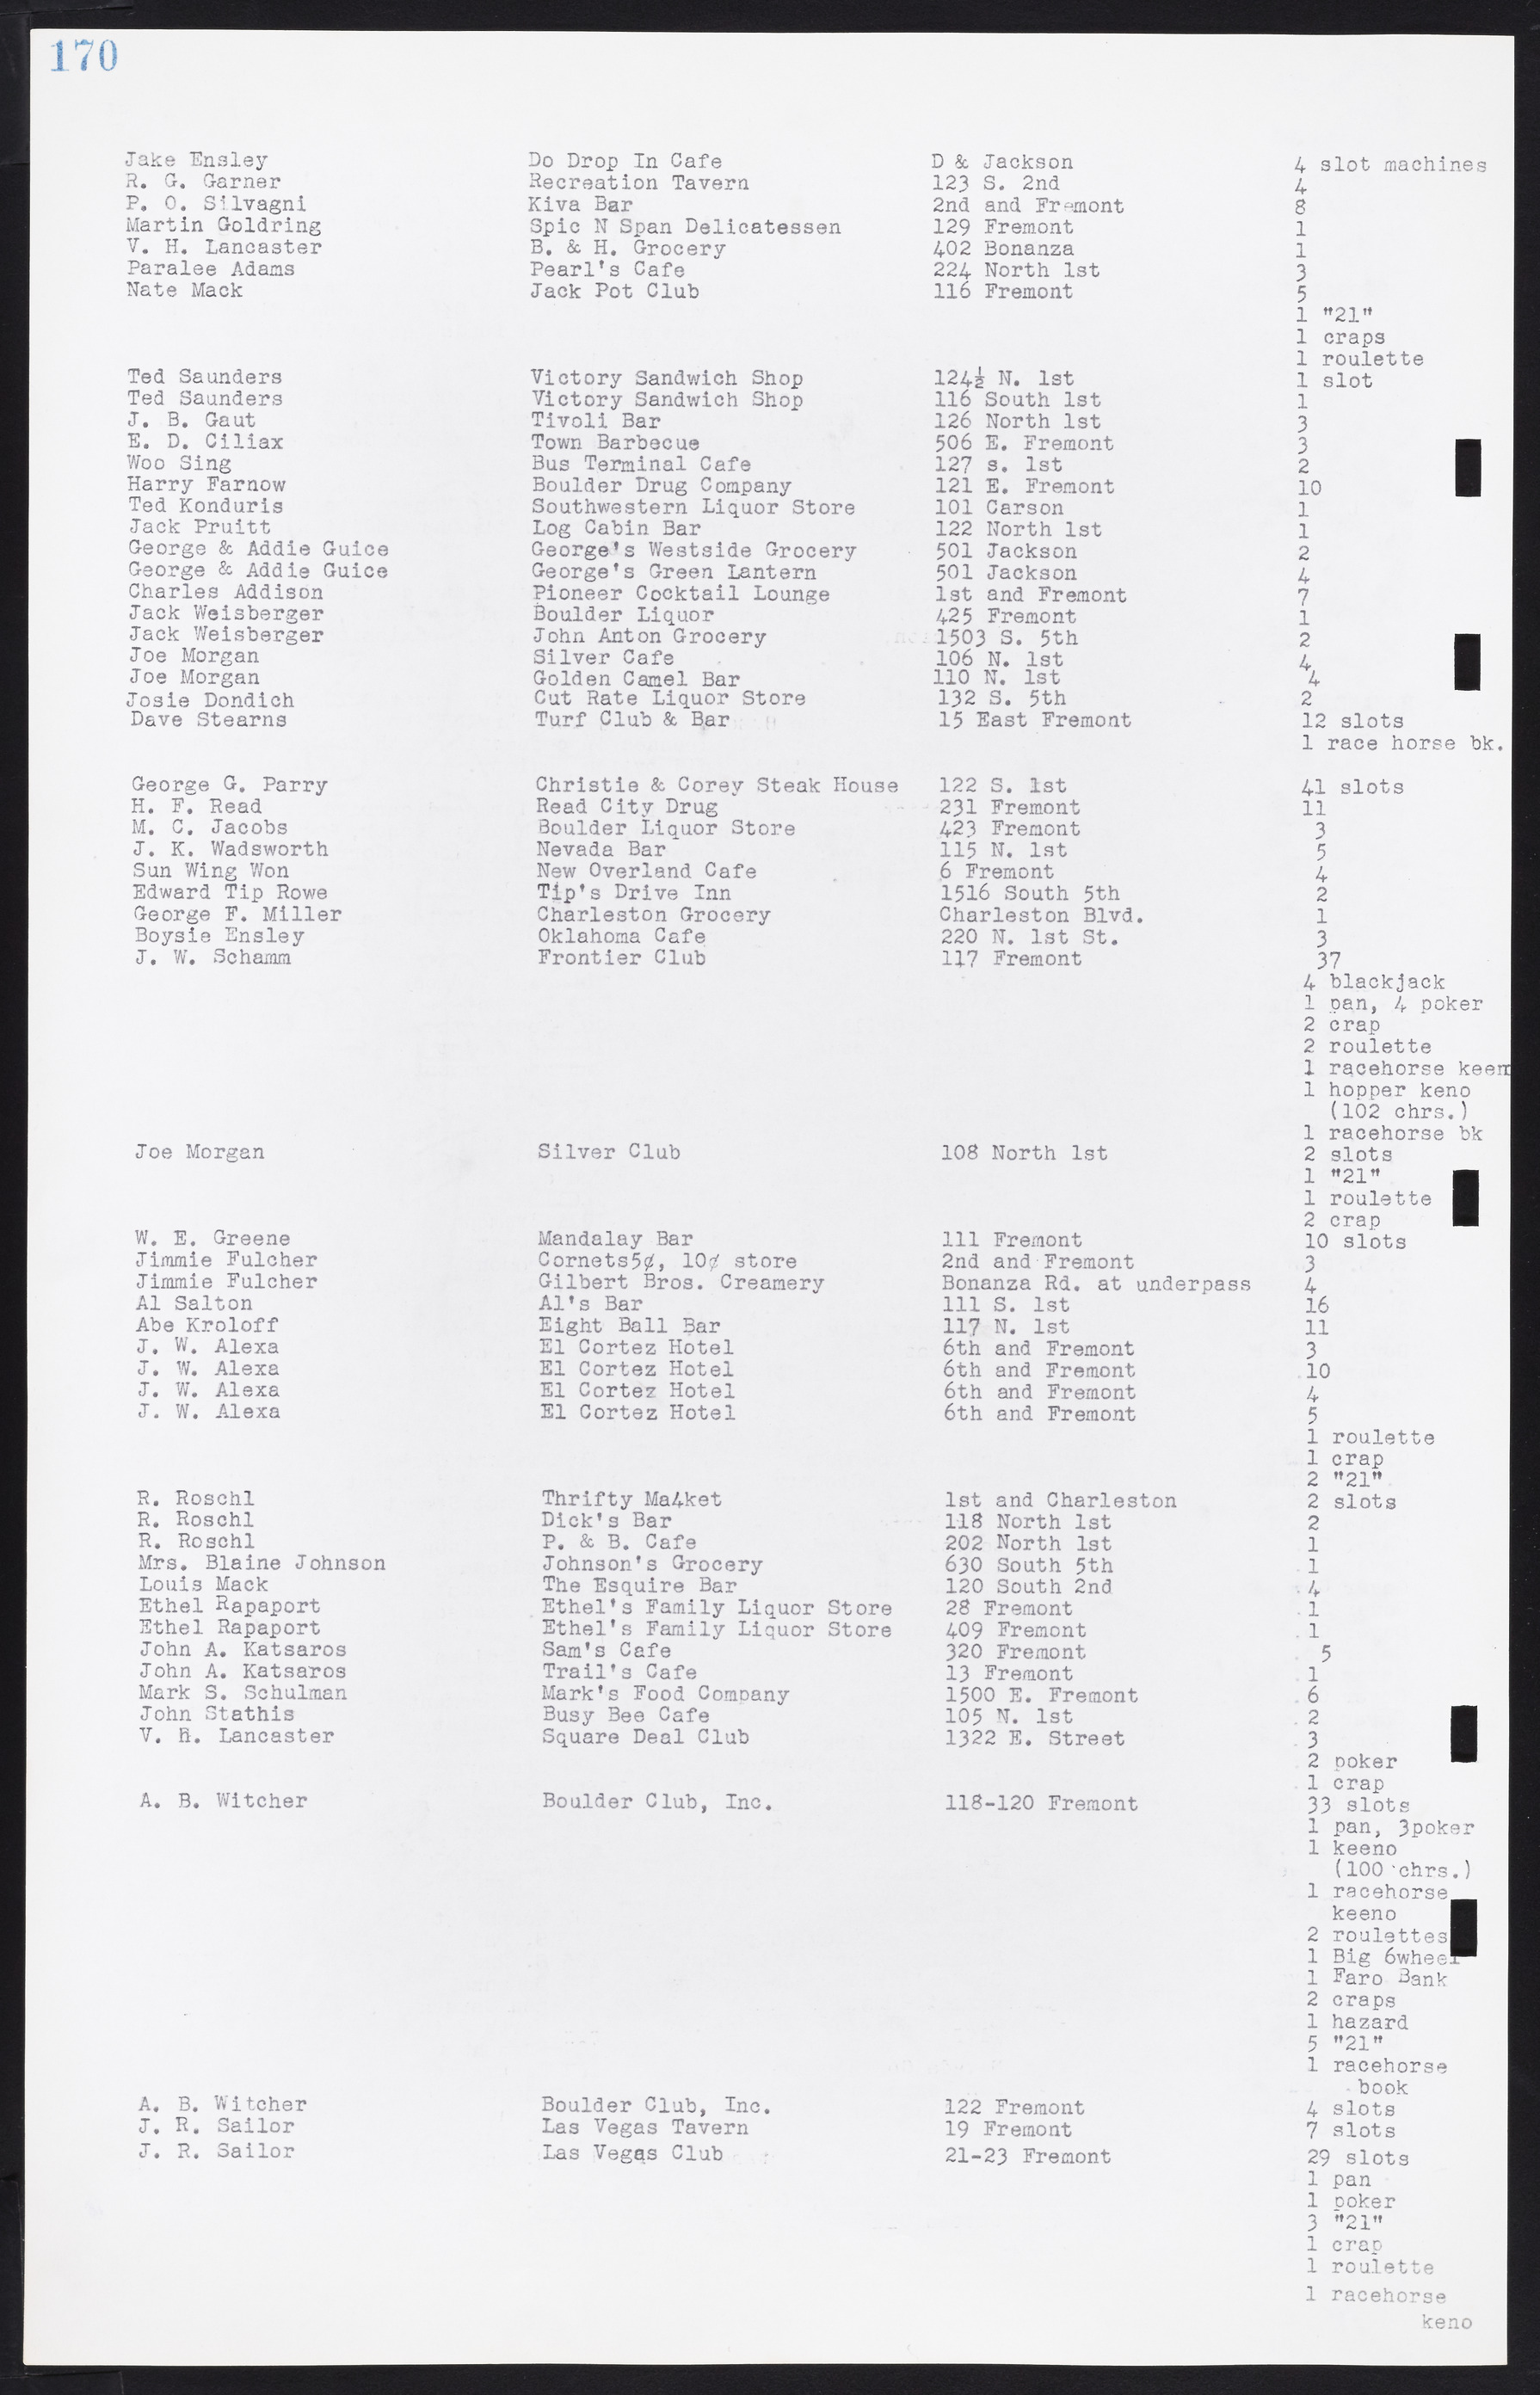 Las Vegas City Commission Minutes, August 11, 1942 to December 30, 1946, lvc000005-187